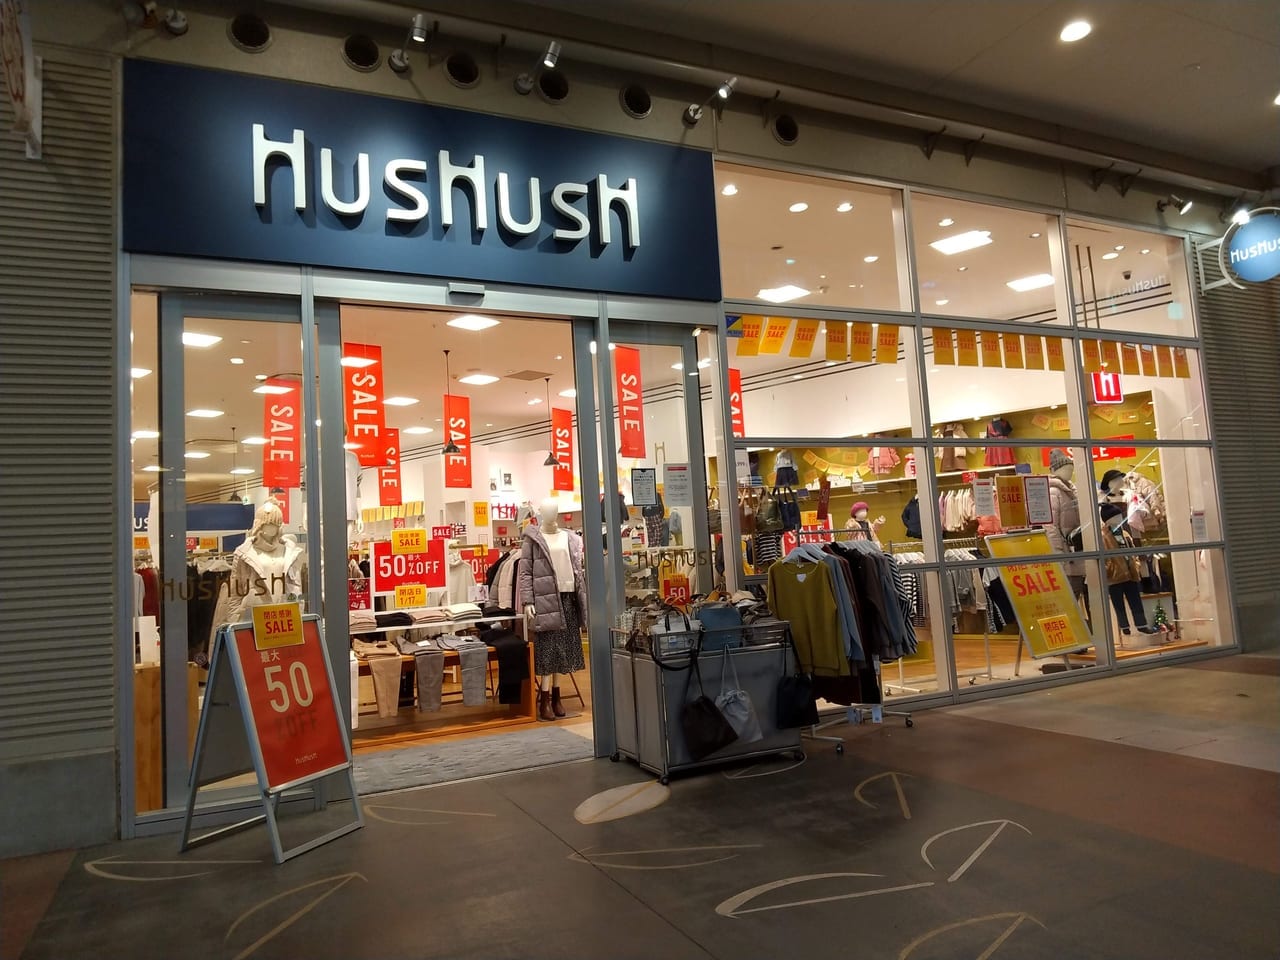 2021年1月17日(日)に閉店するHusHusH鶴ヶ島ワカバウォーク店